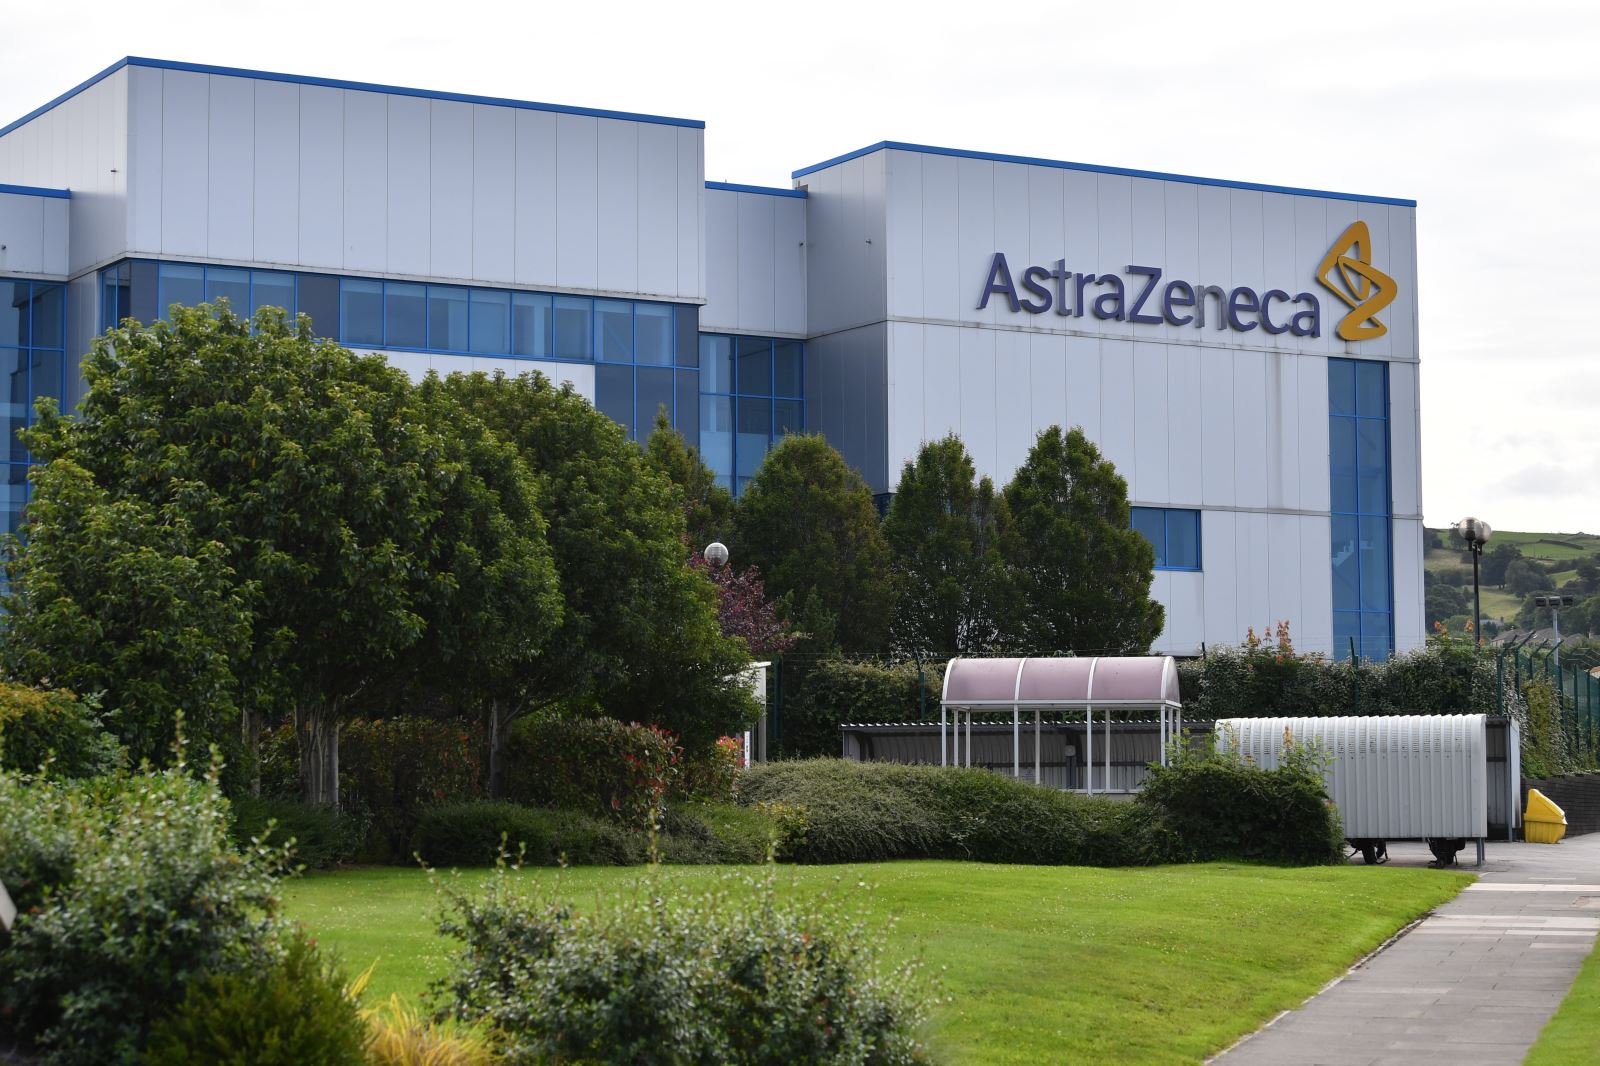 Văn phòng hãng dược phẩm AstraZeneca tại Macclesfield, Cheshire, Anh, ngày 21-7-2020. Ảnh: AFP/ TTXVN